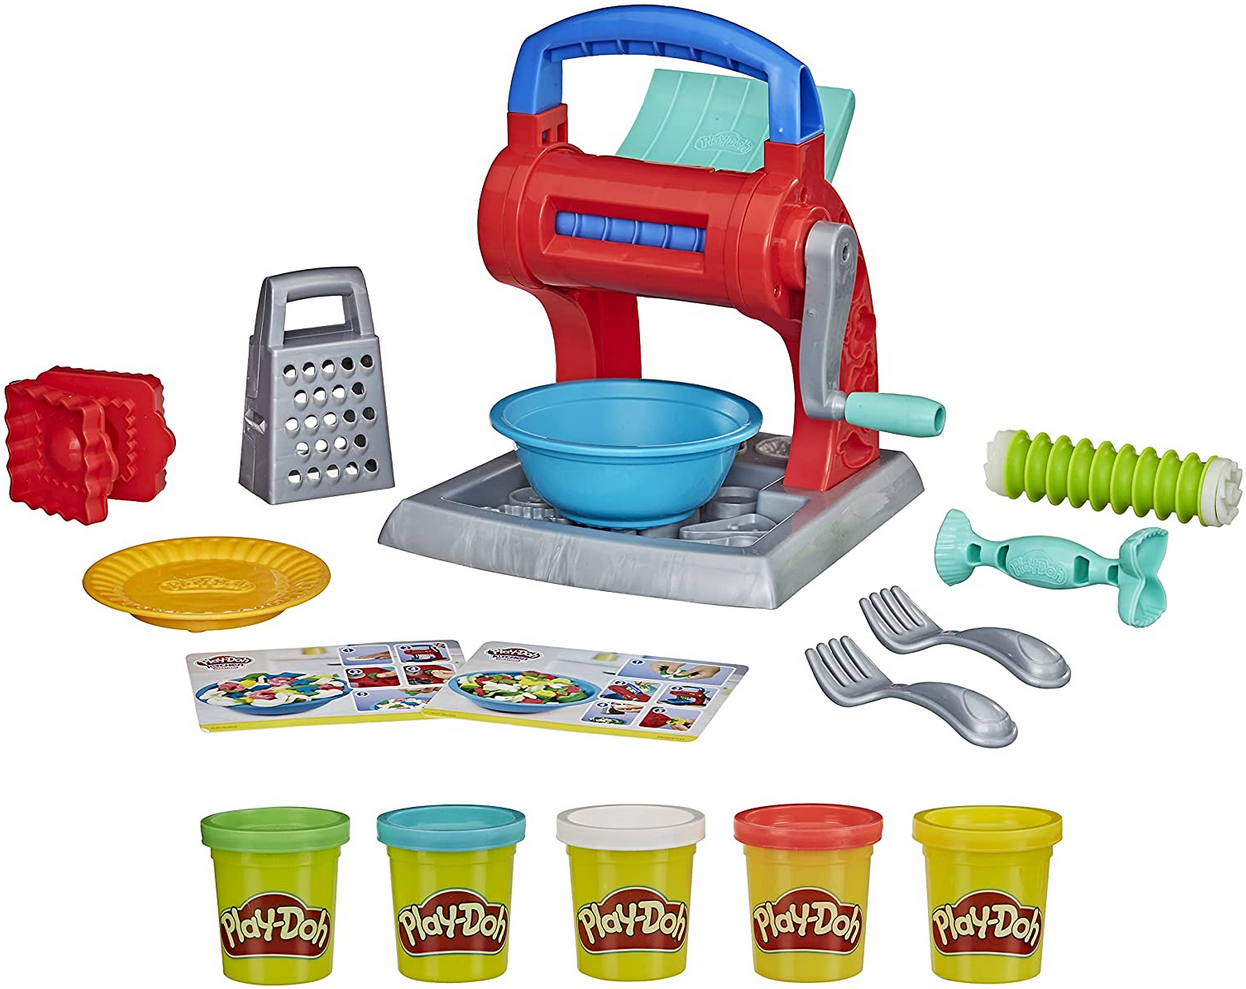 Play Doh Kitchen Creations Super Nudelmaschine mit 5 Farben für 14,99€ (statt 25€)   Prime